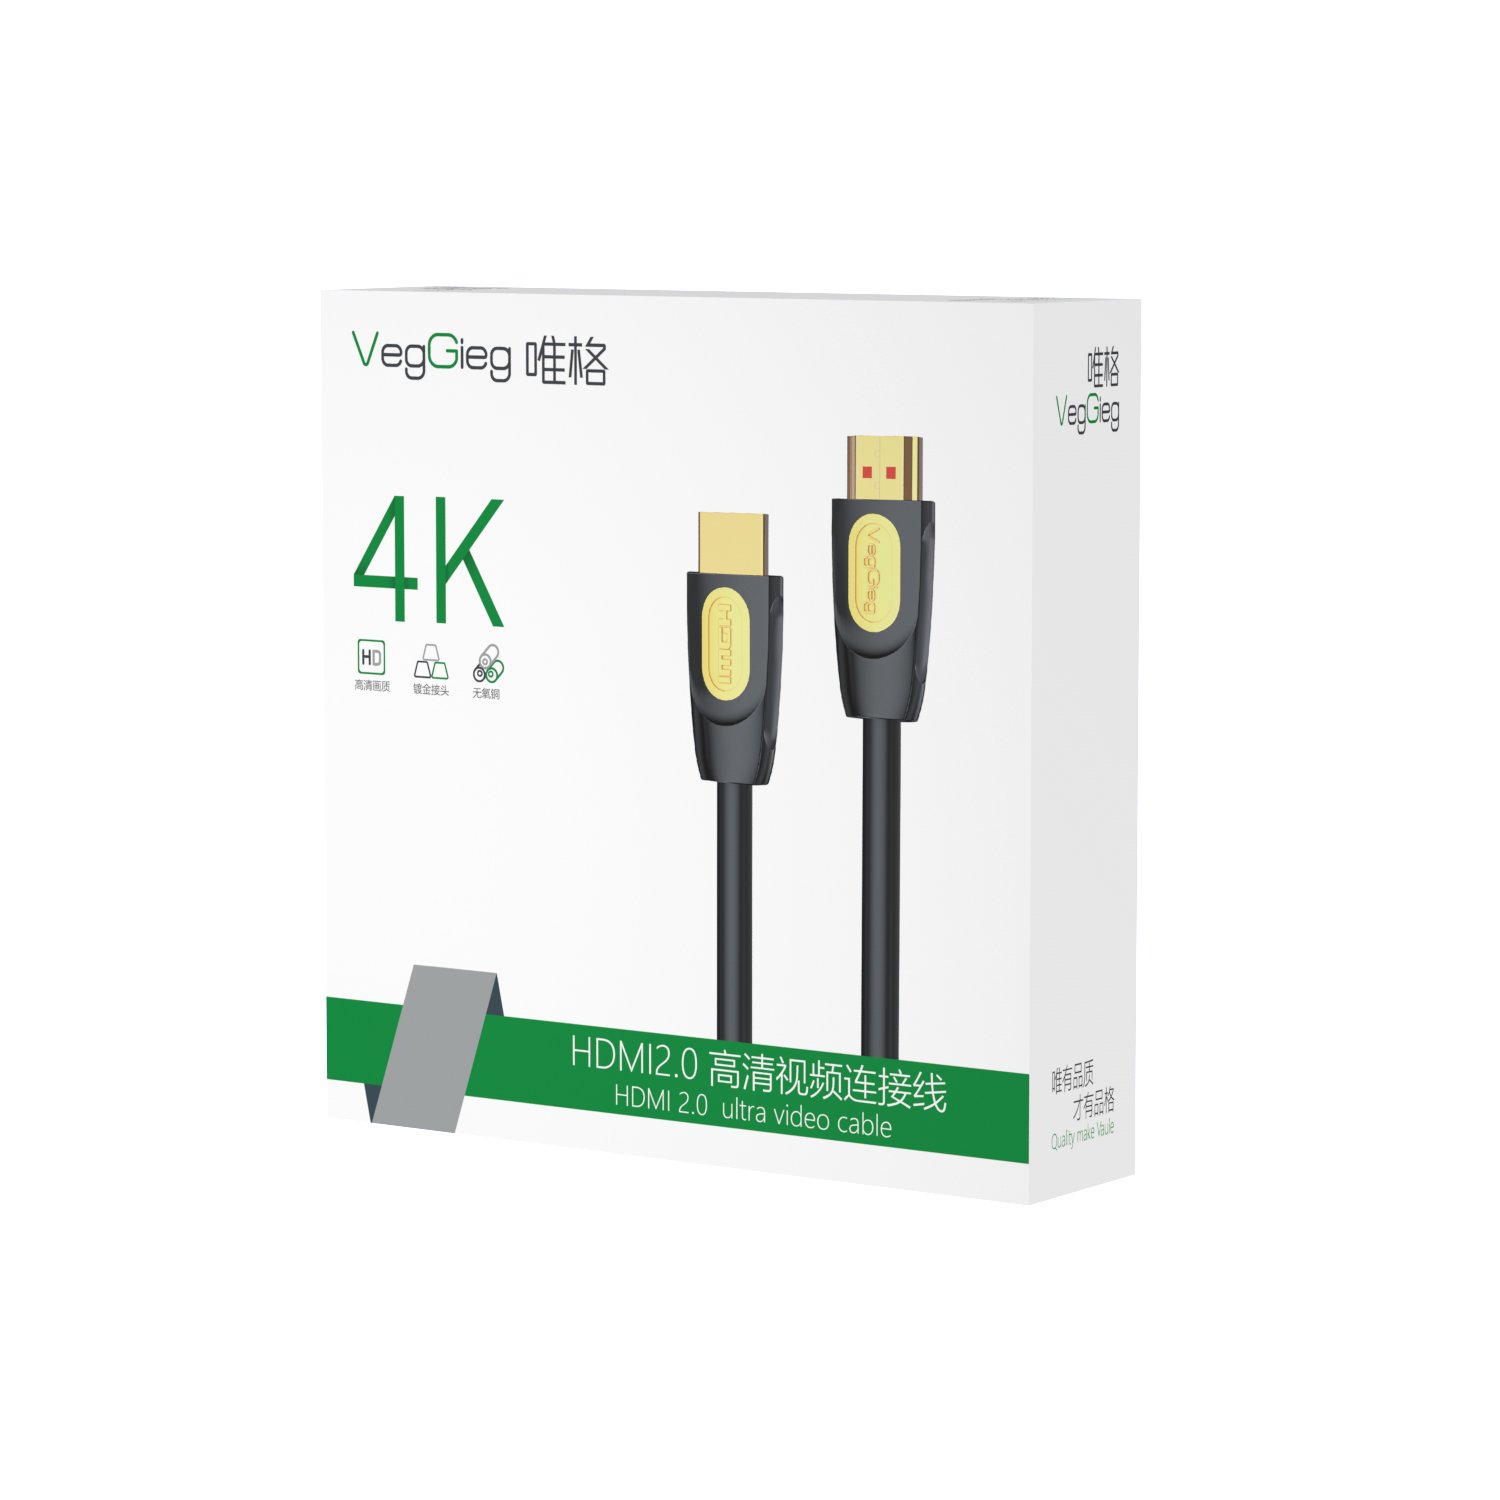 Cáp HDMI 2.0 4K 60fps 1.5m VEGGIEG VH203 4K Cáp HDMI chuẩn 4K hàng chính hãng